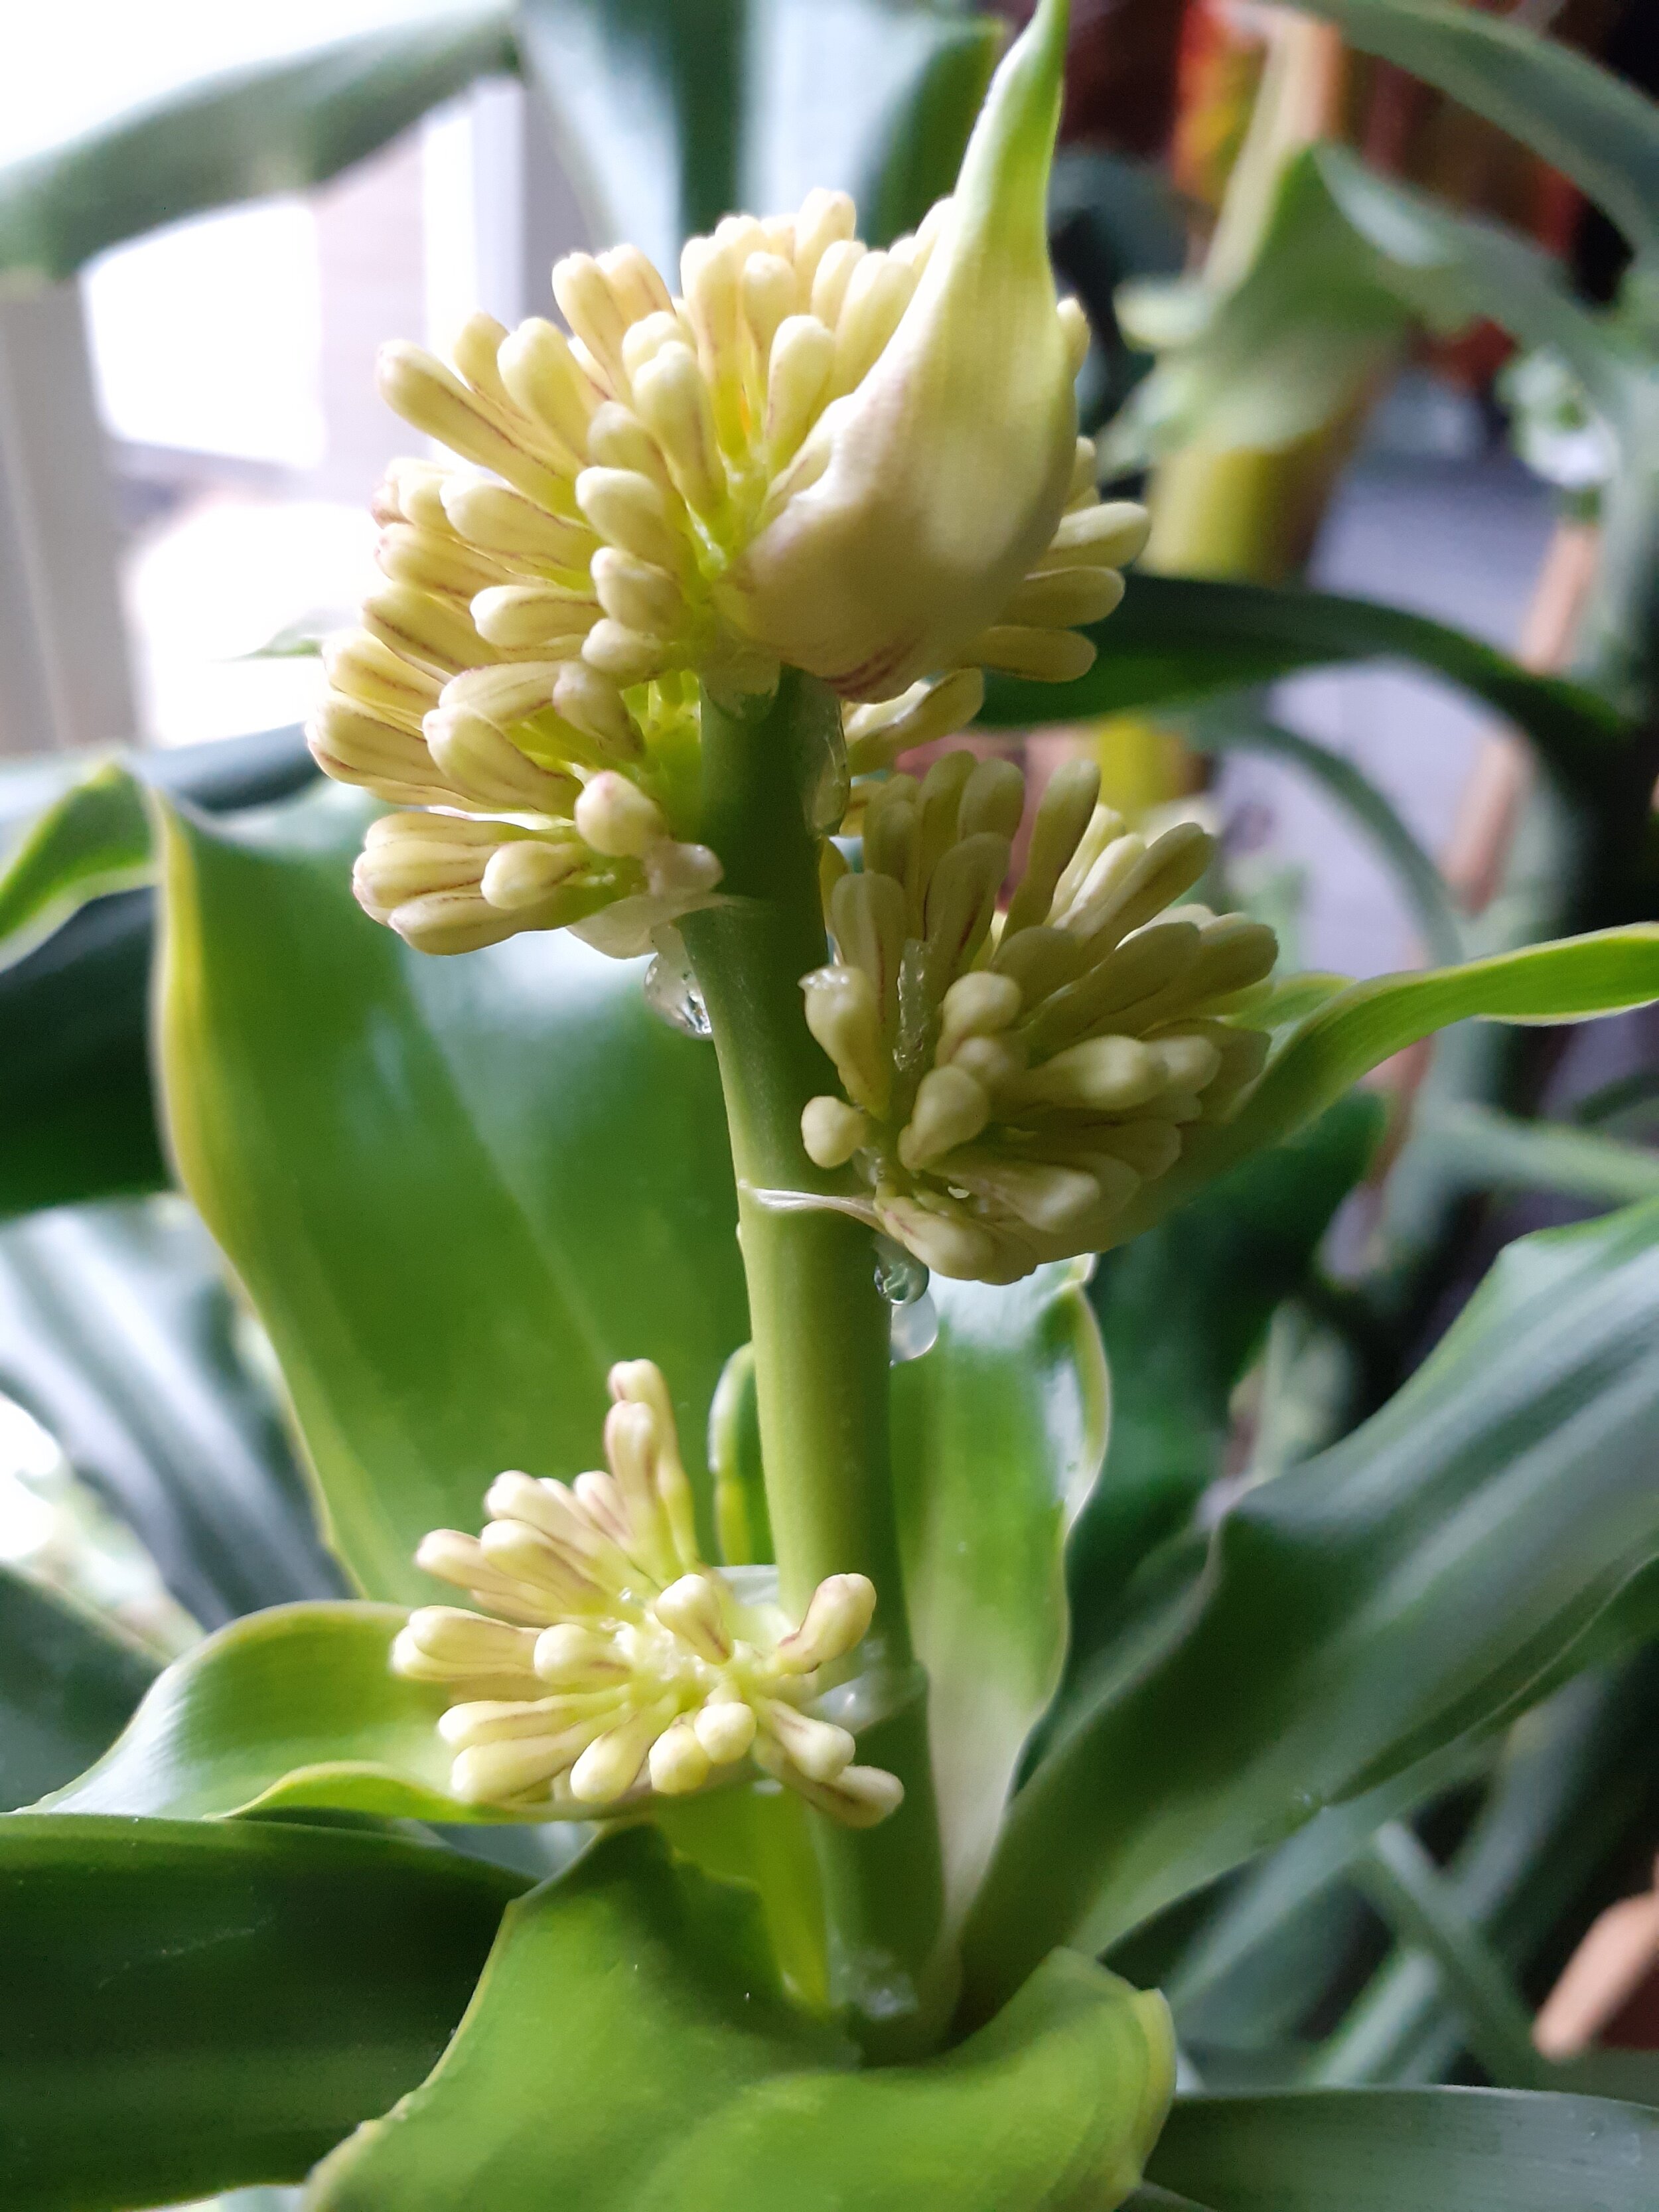 Staat tank Echt Plantenvraag: Groeit er nou een bloem in mijn kamerplant? — Mama Botanica